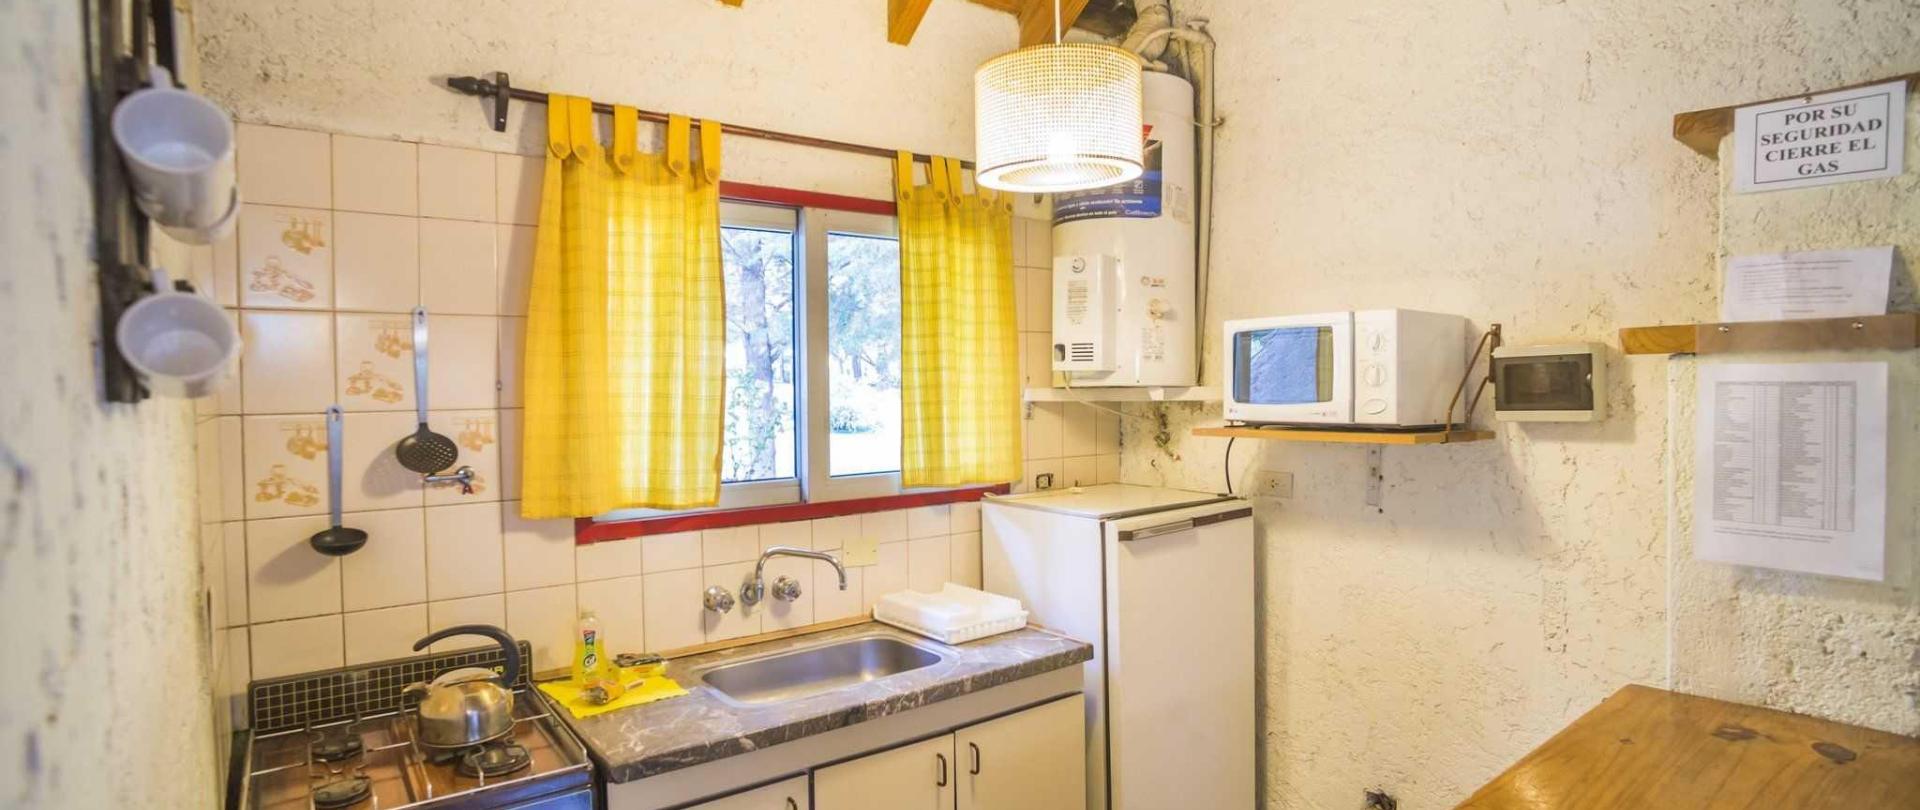 Kitchen in a cabin at Cabañas Del Pastizal, Uspallata, Mendoza Province, Argentina-2